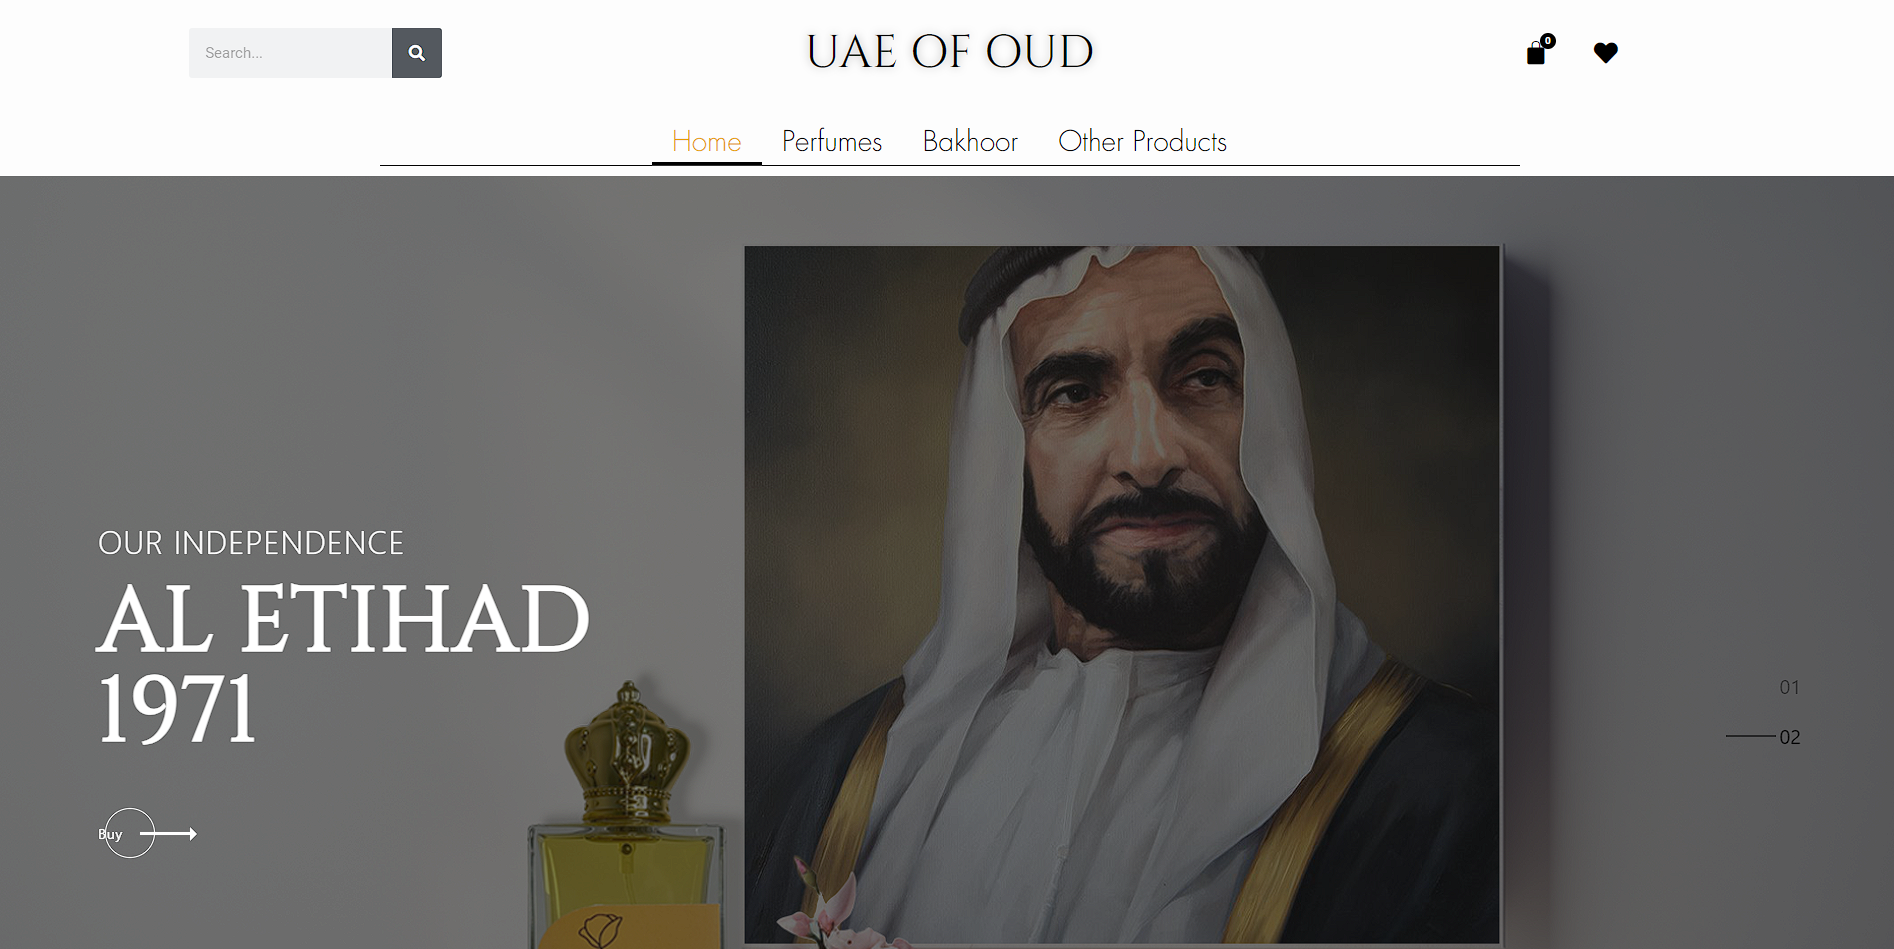 UAE OF OUD